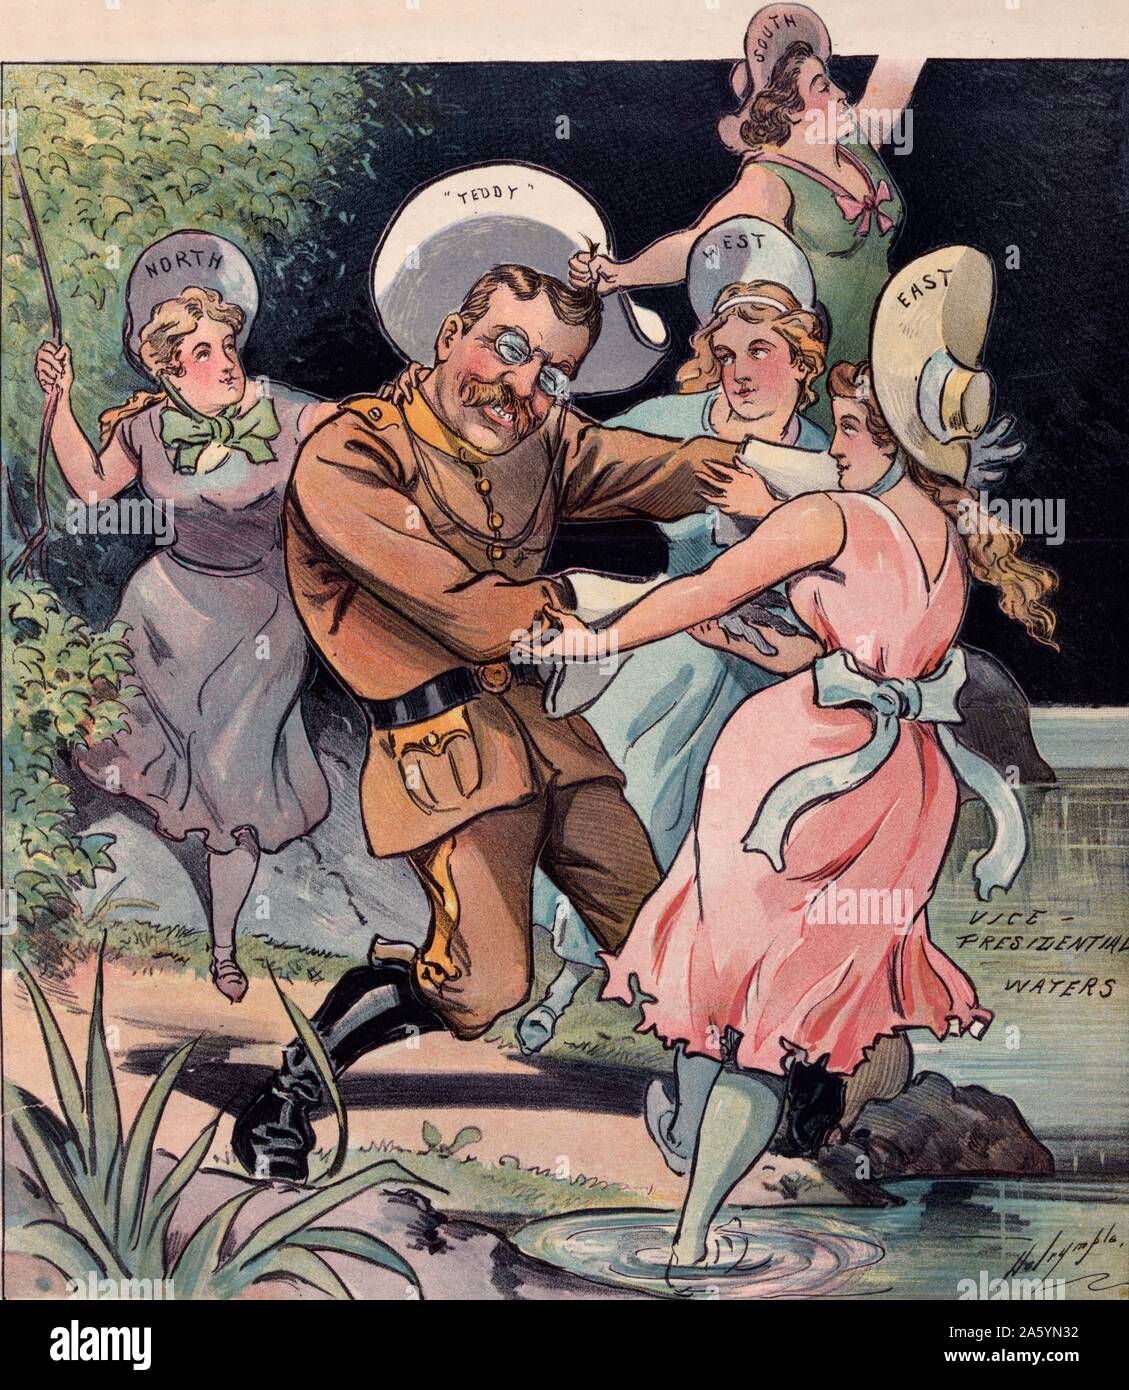 Der Kampf für das Leben 1900. "Teddy" Roosevelt, in seiner rauhen-rider Uniform, gezogen zu 'Vice Presidential Gewässer" durch vier Frauen mit der Aufschrift "Norden", "Osten", "Süden" und "Westen". Stockfoto